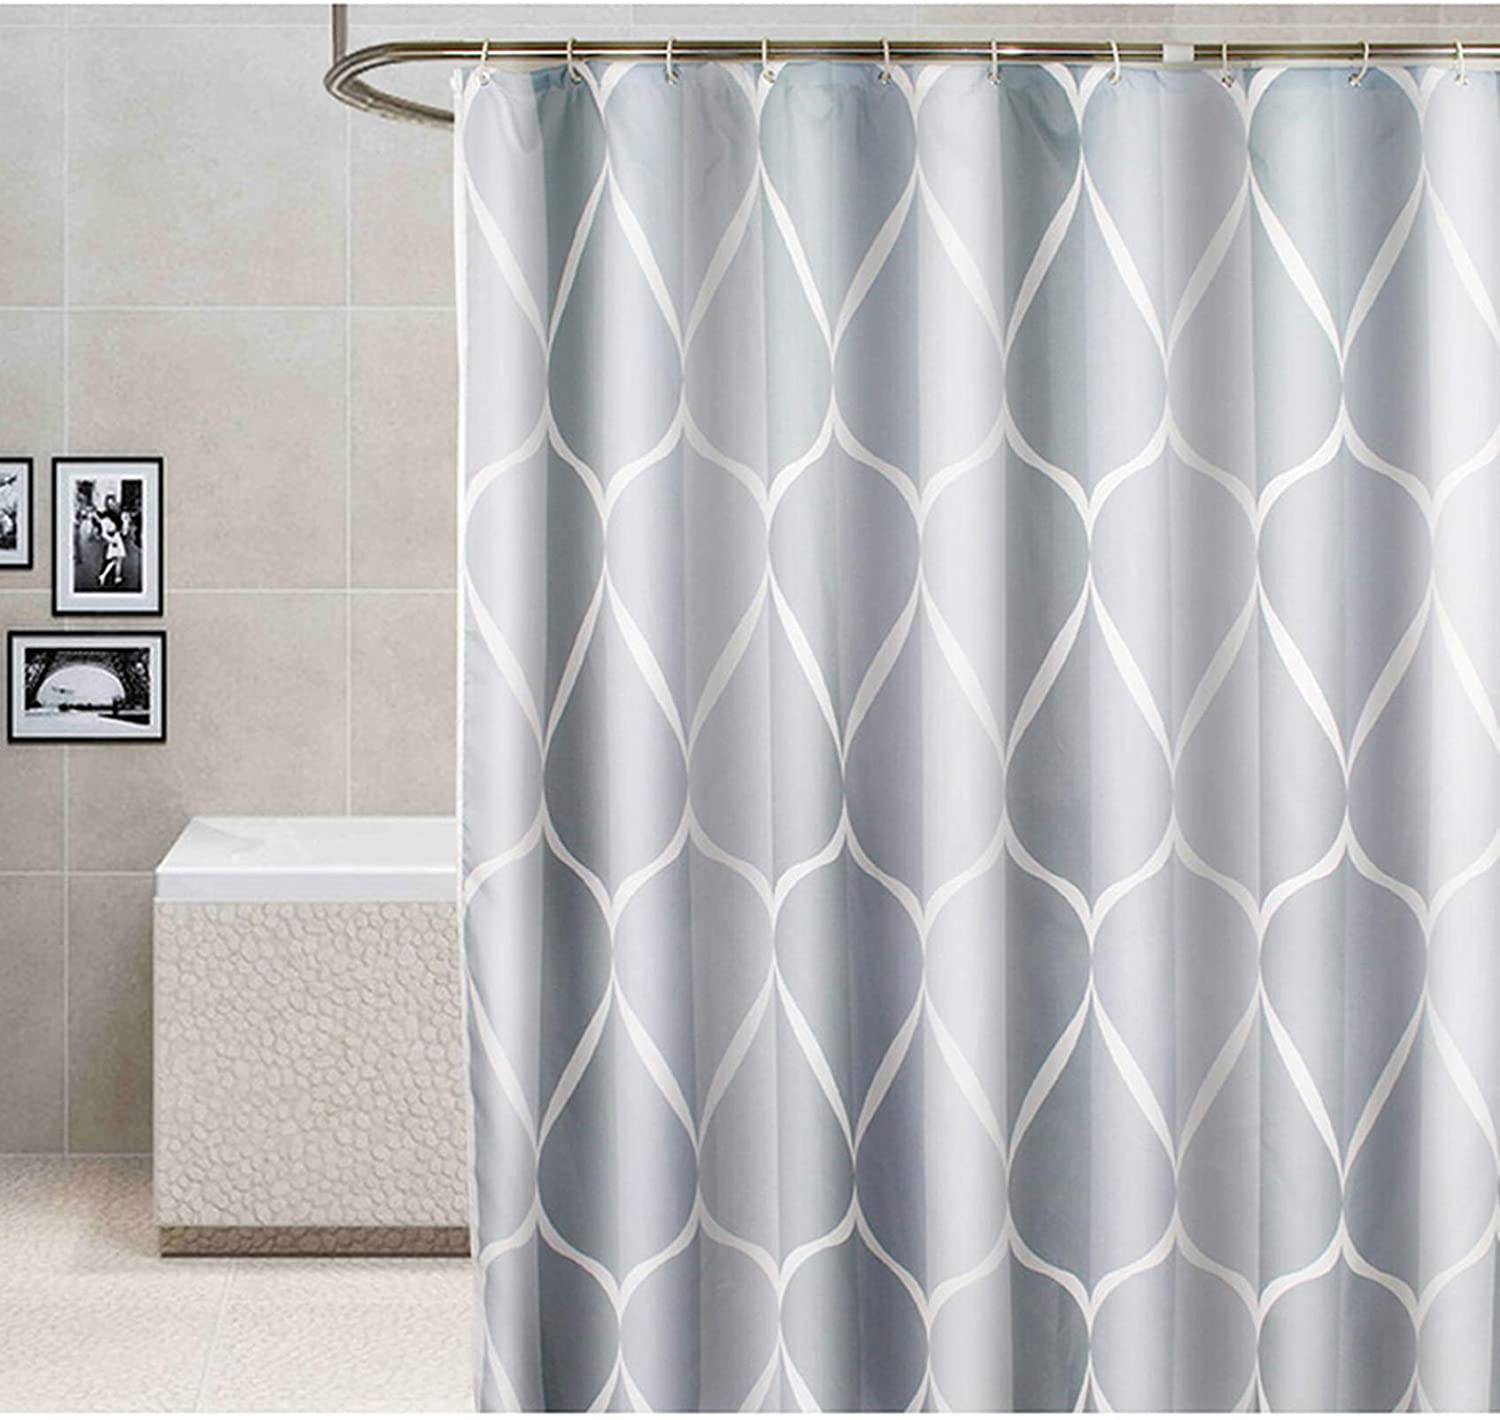 La mejor cortina para un baño moderno y sobrio